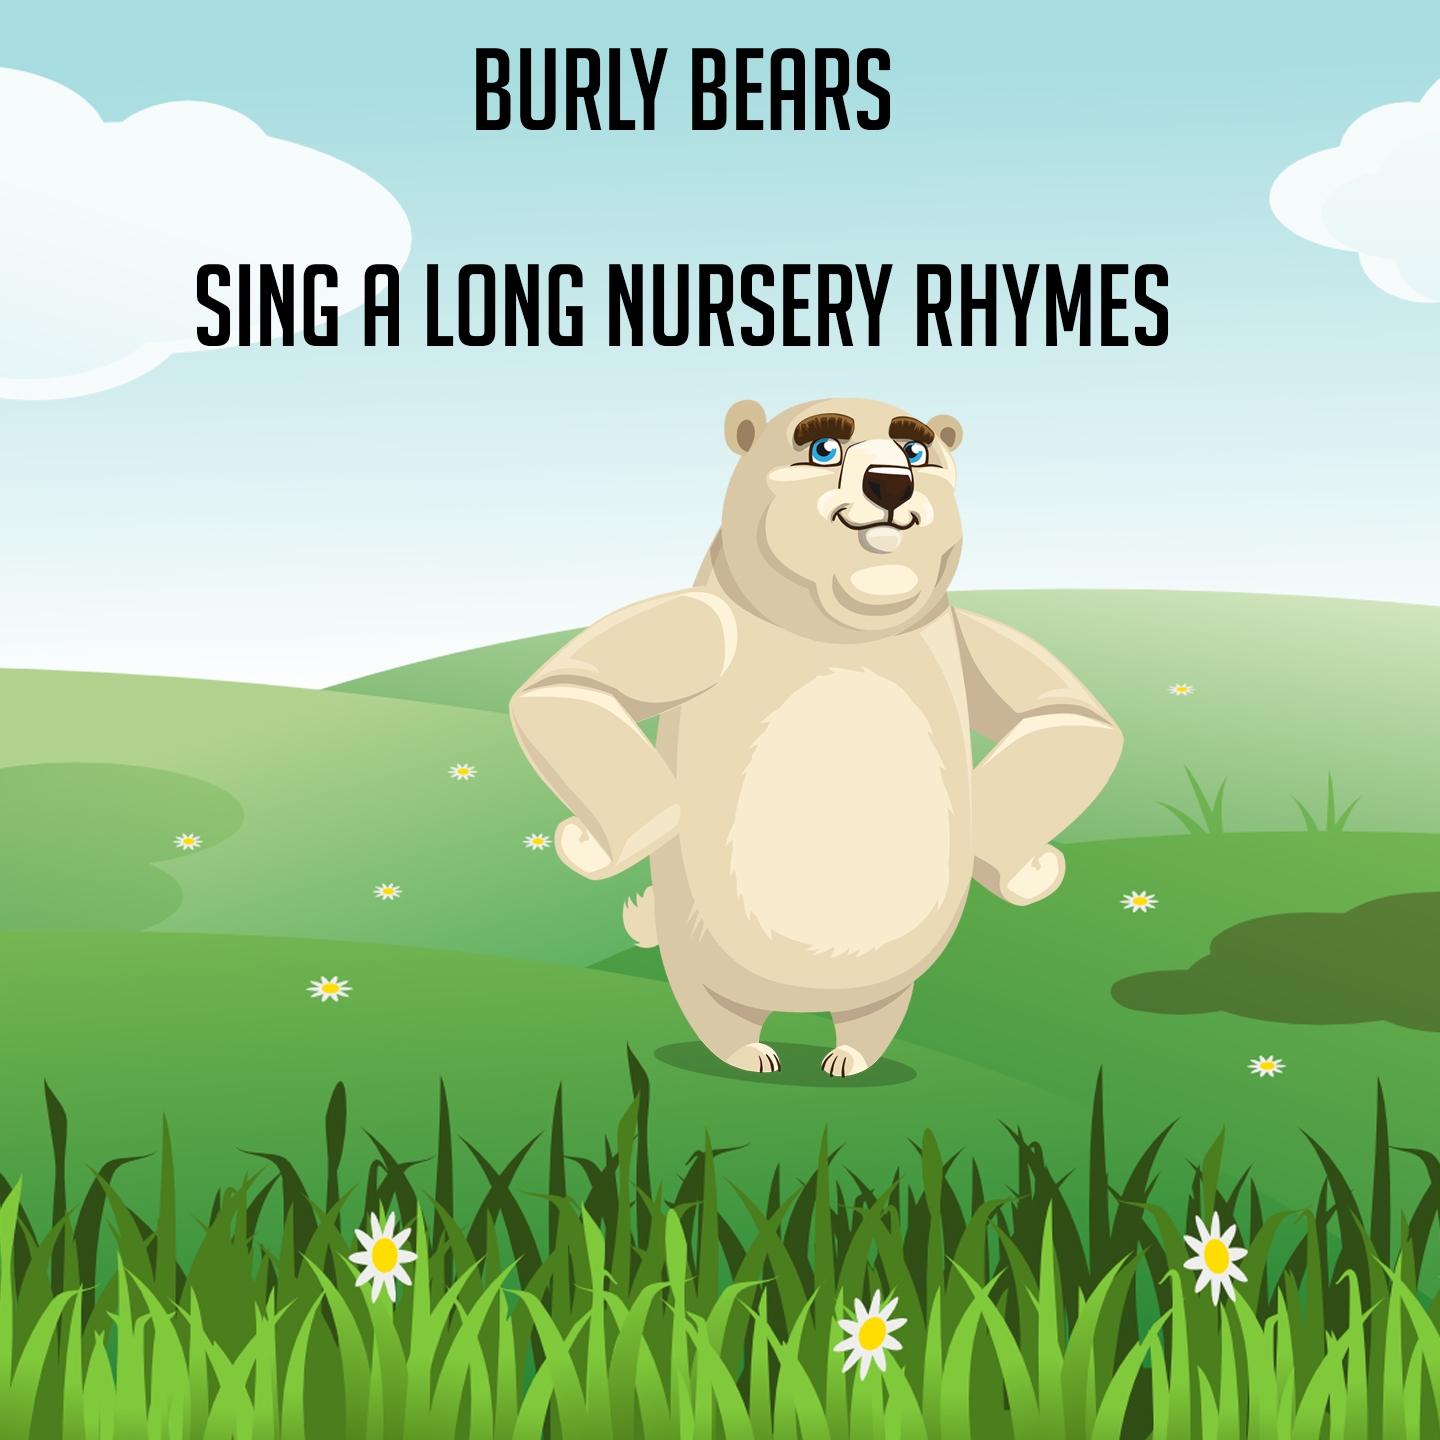 Burly Bears Sing A Long Nursery Rhymes